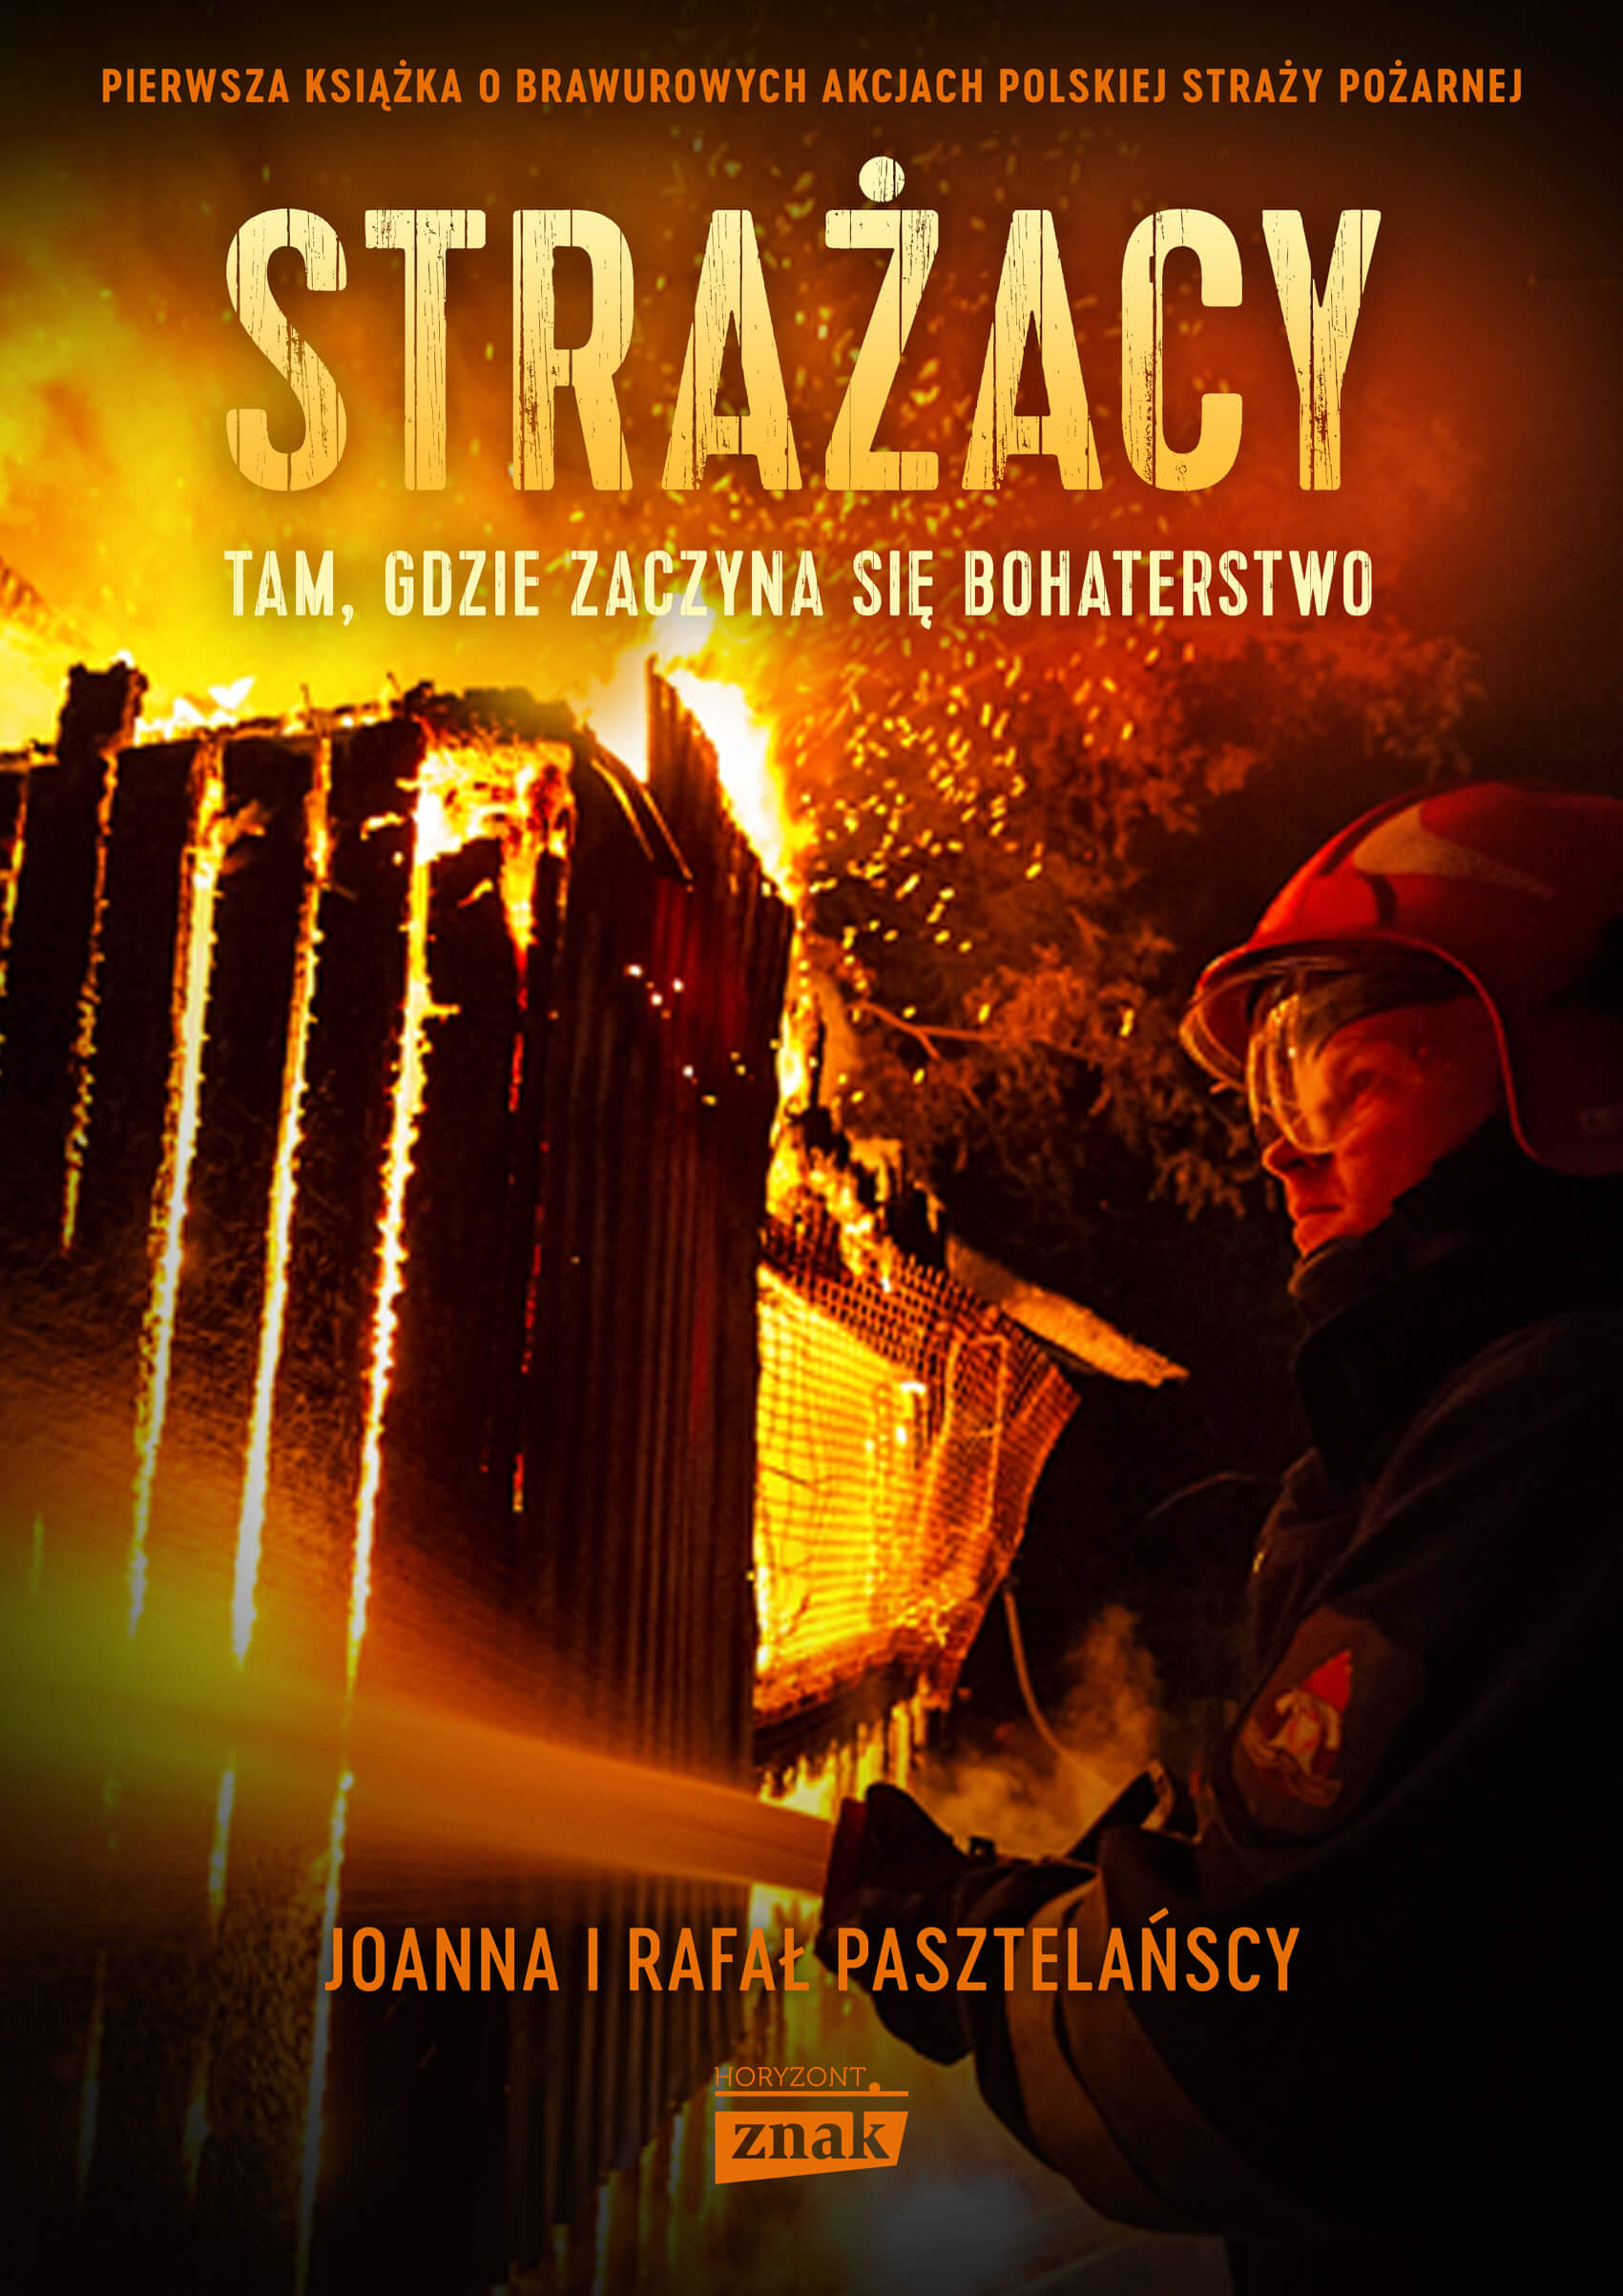 Pasztelanscy-Strazacy